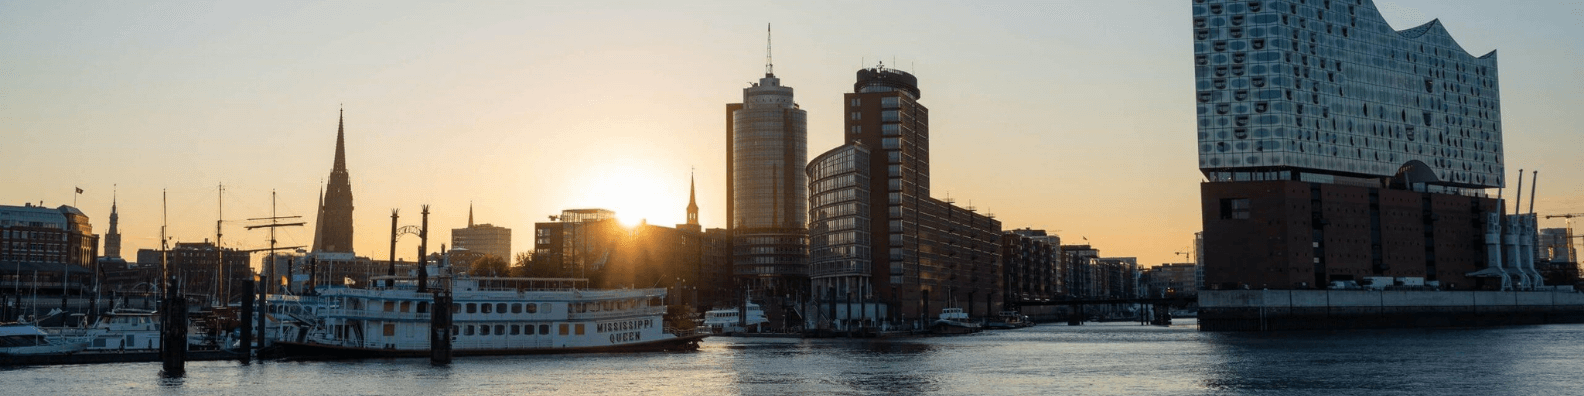 Wohnberechtigungsschein Hamburg beantragen: Wie geht das?